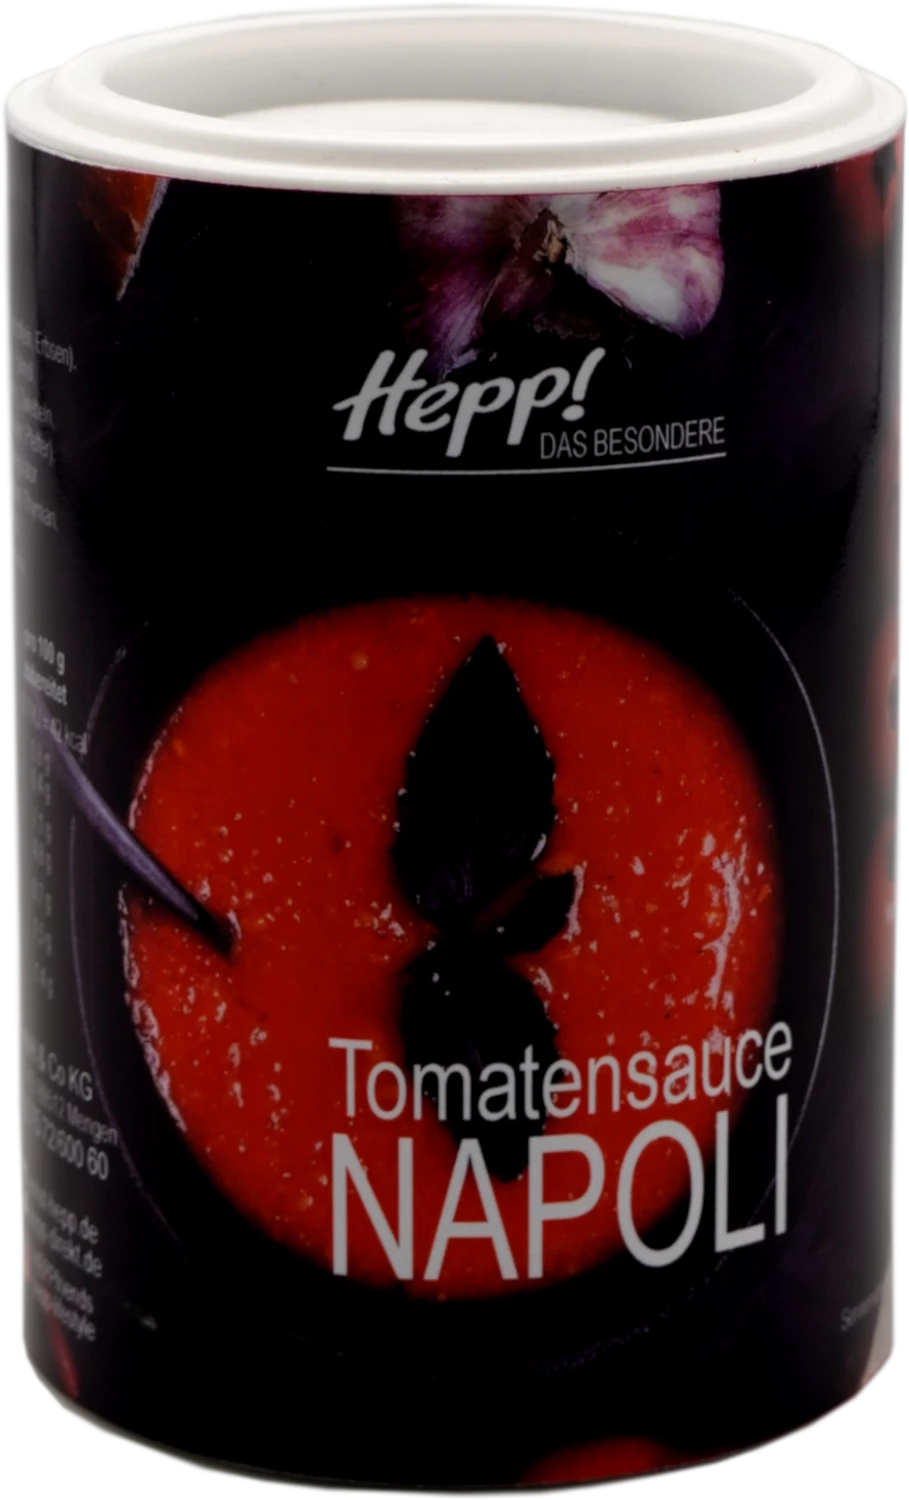 Tomatensoße Napoli 200g